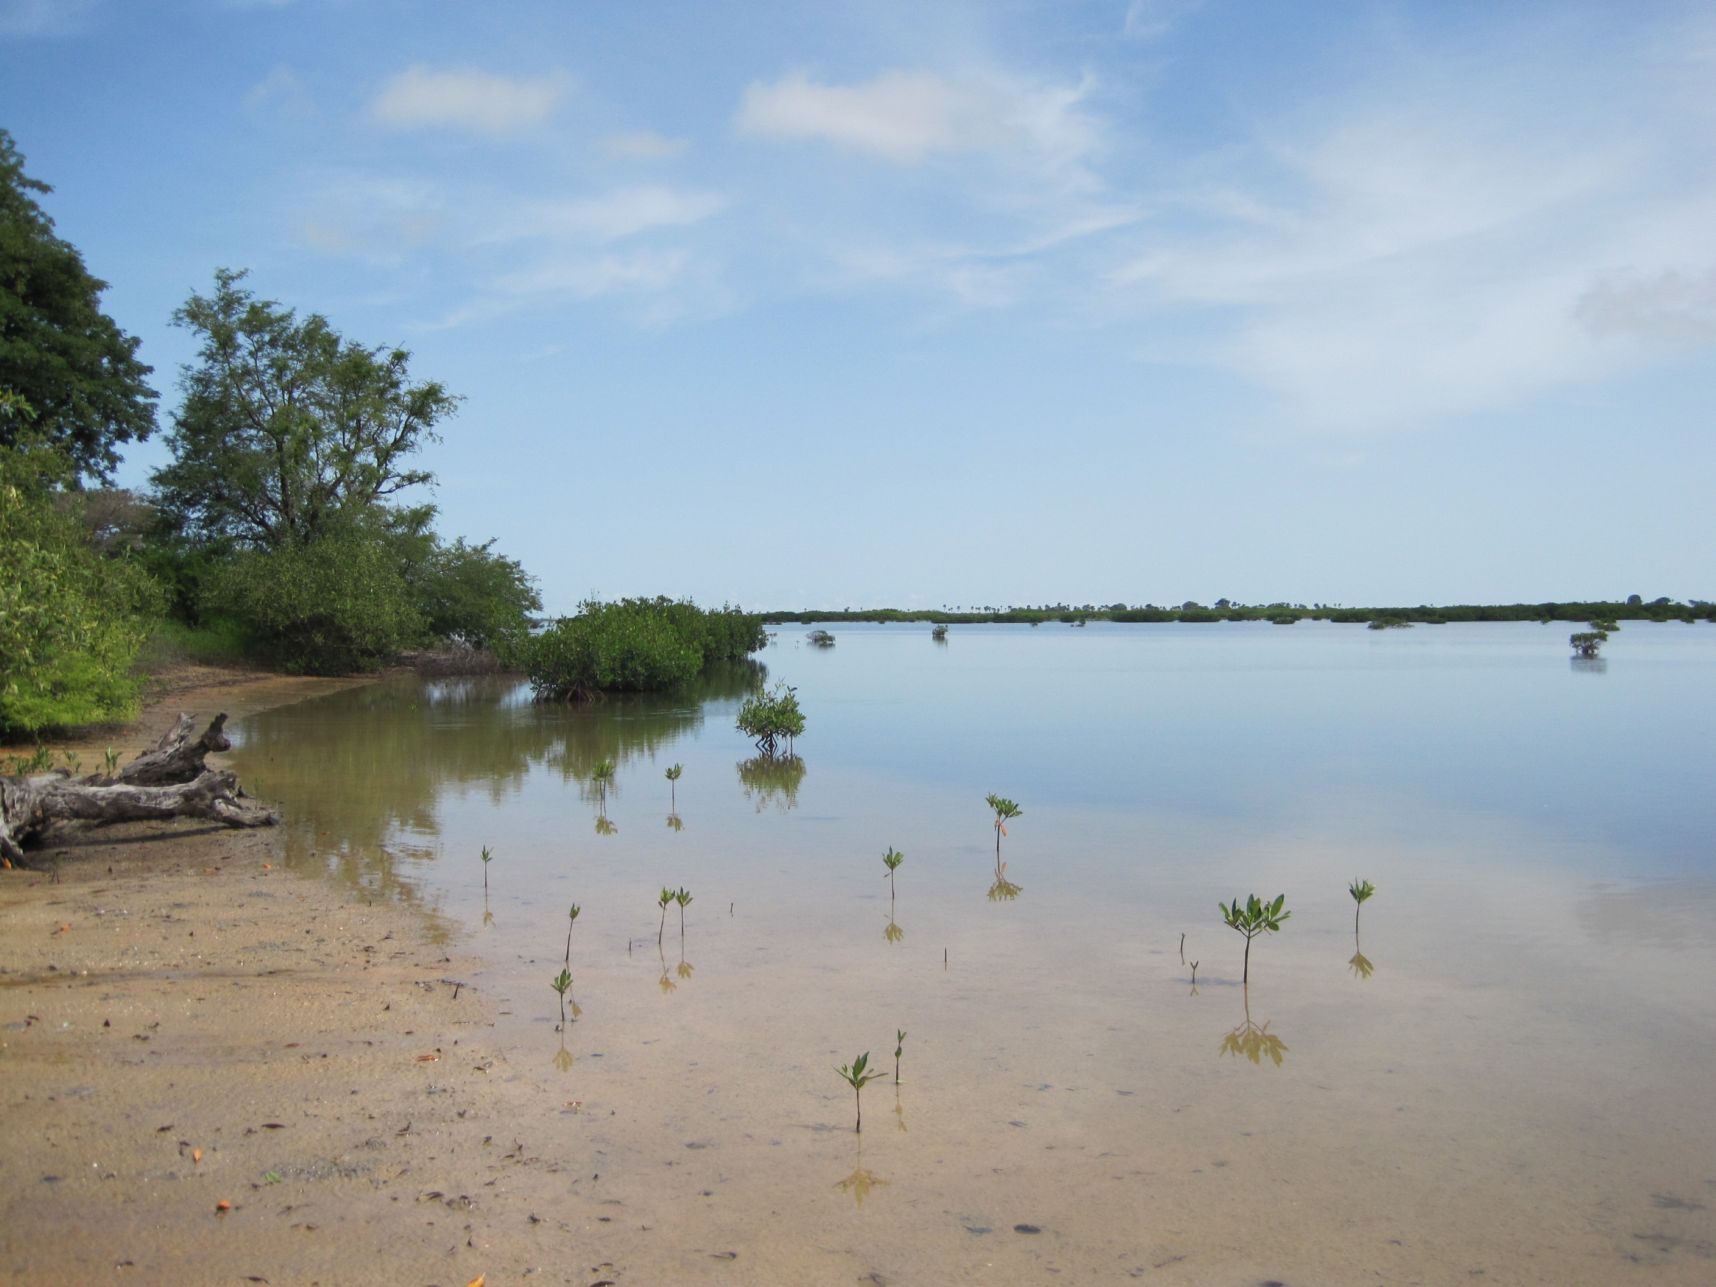 201110614054_Le.mangrovie2.jpg